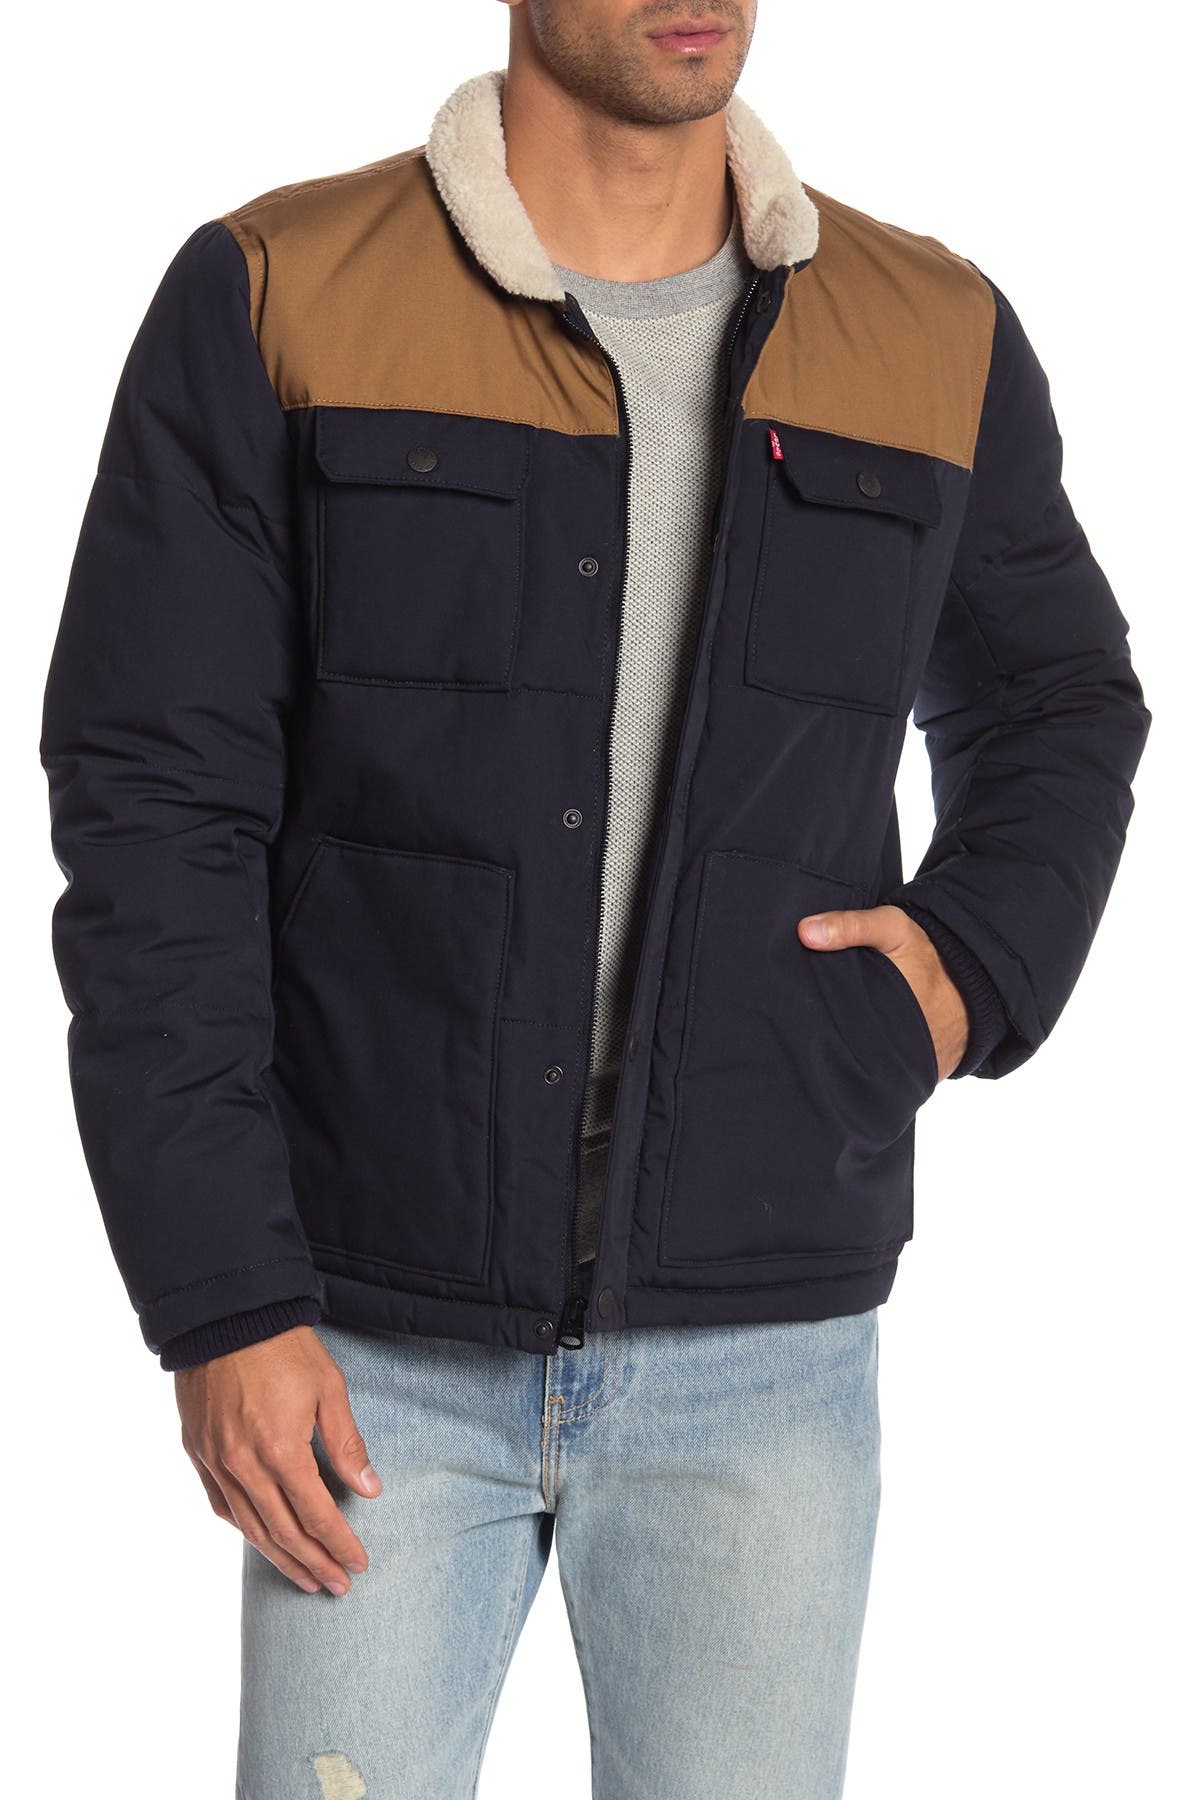 levi woodsman jacket